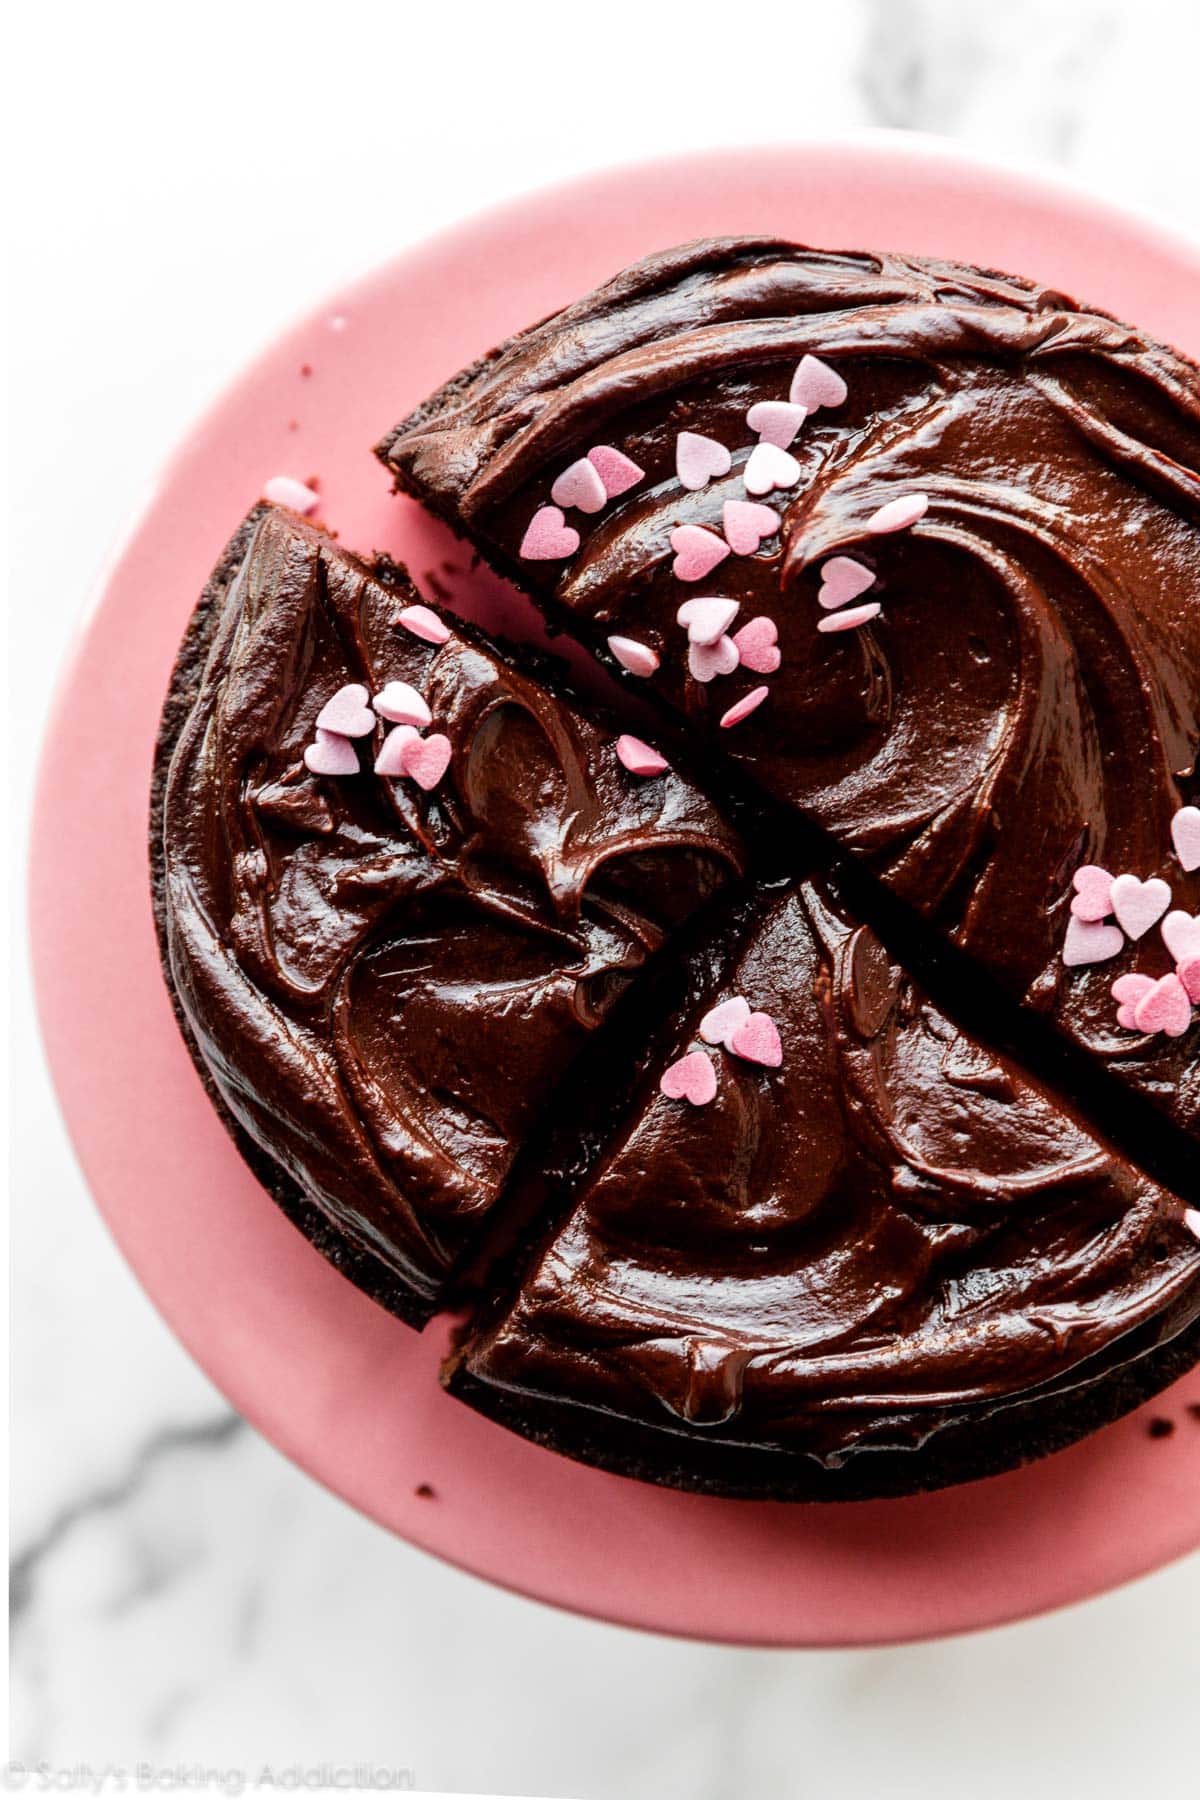 photo prise à la verticale d'une ganache au chocolat et d'un cœur rose saupoudré sur un gâteau au chocolat